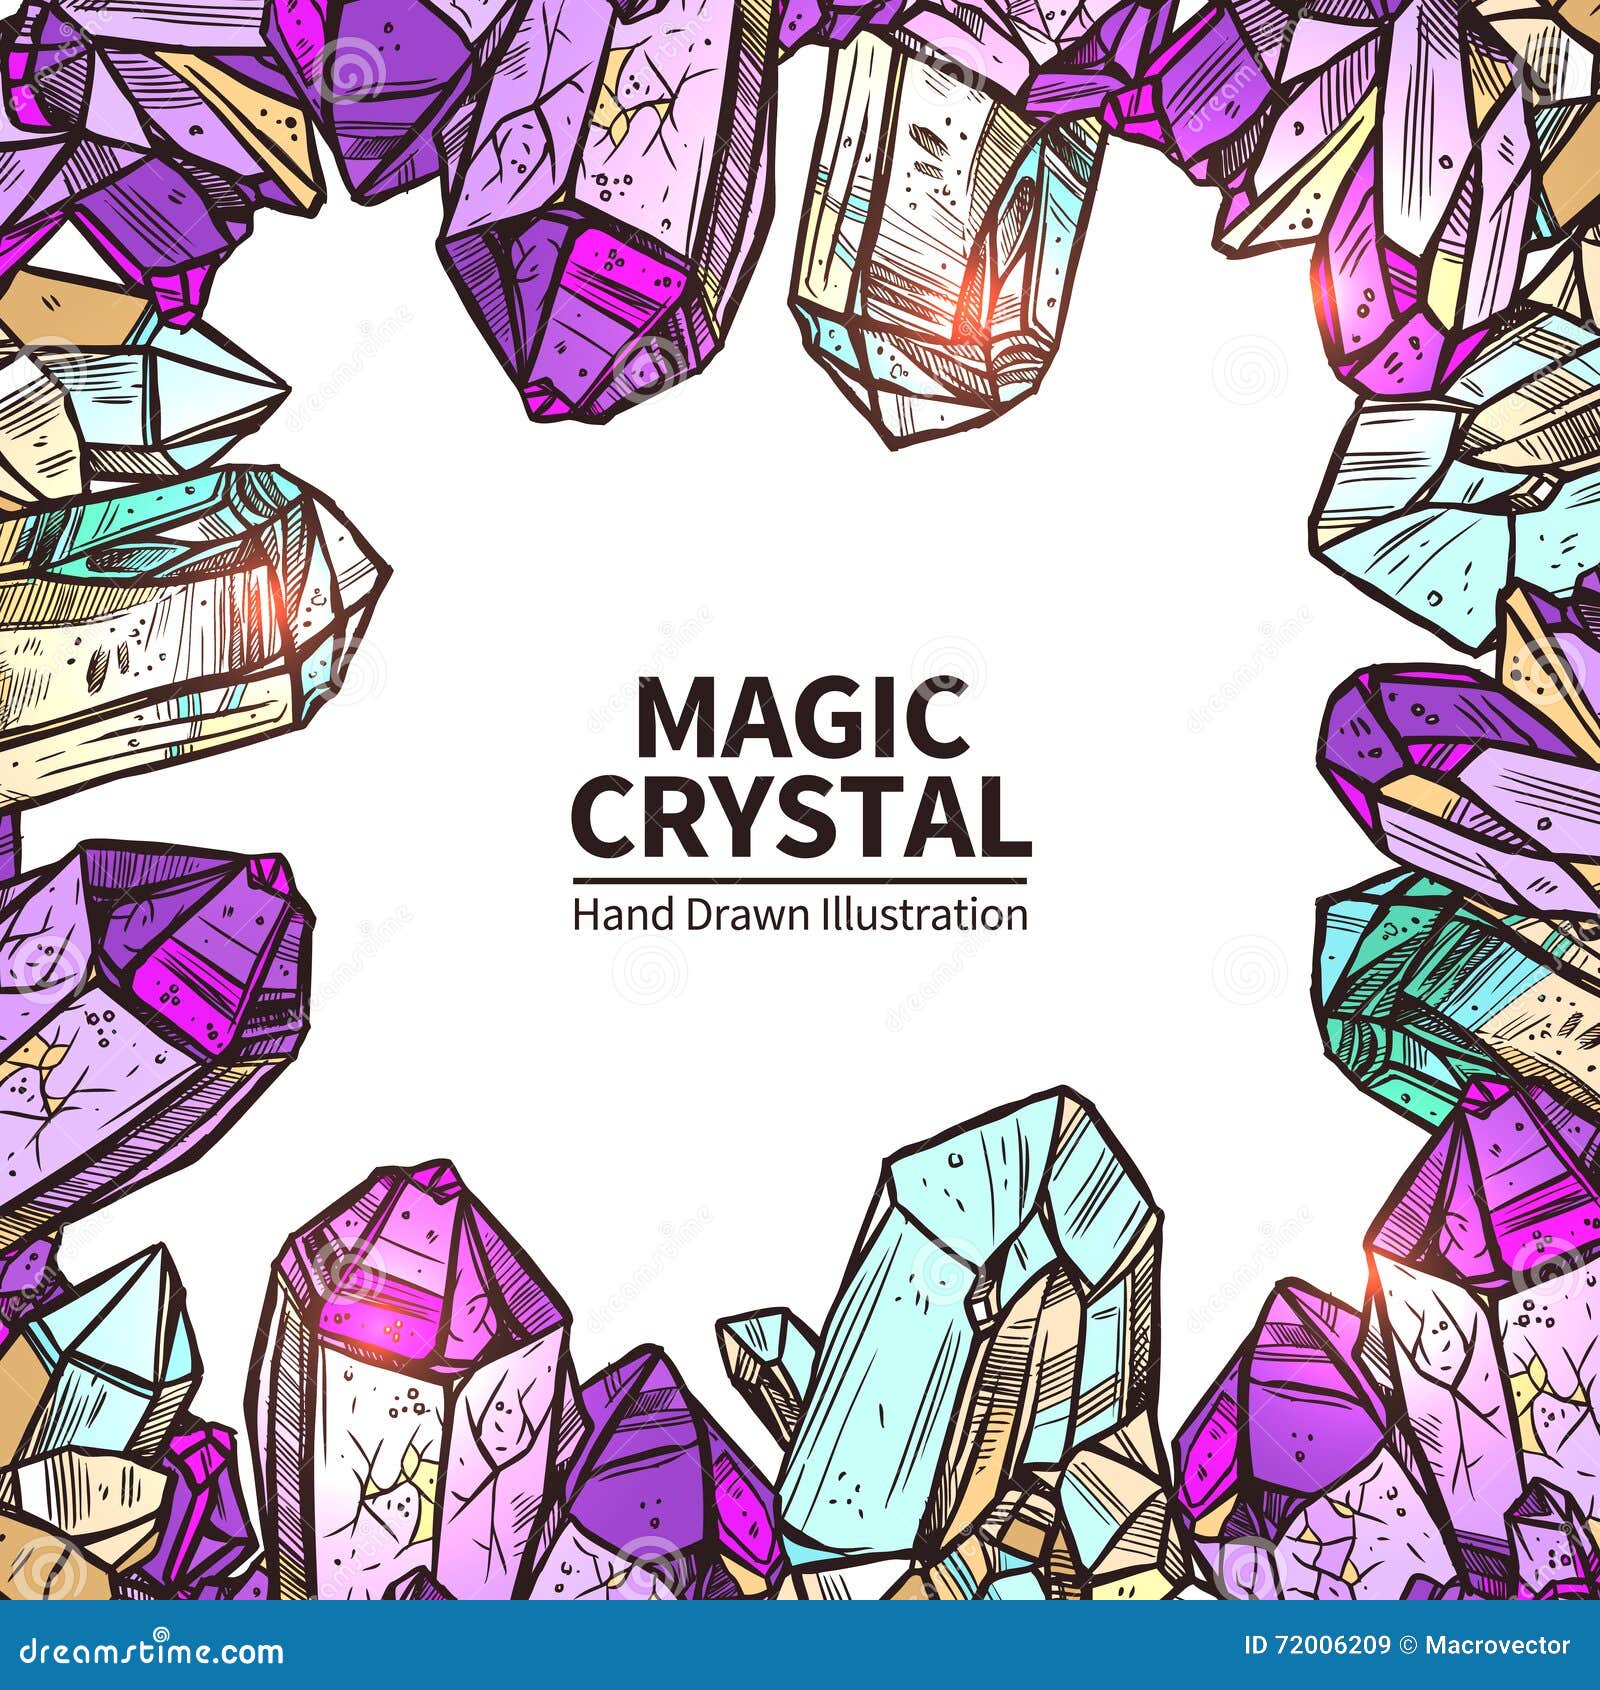 crystals hand drawn 